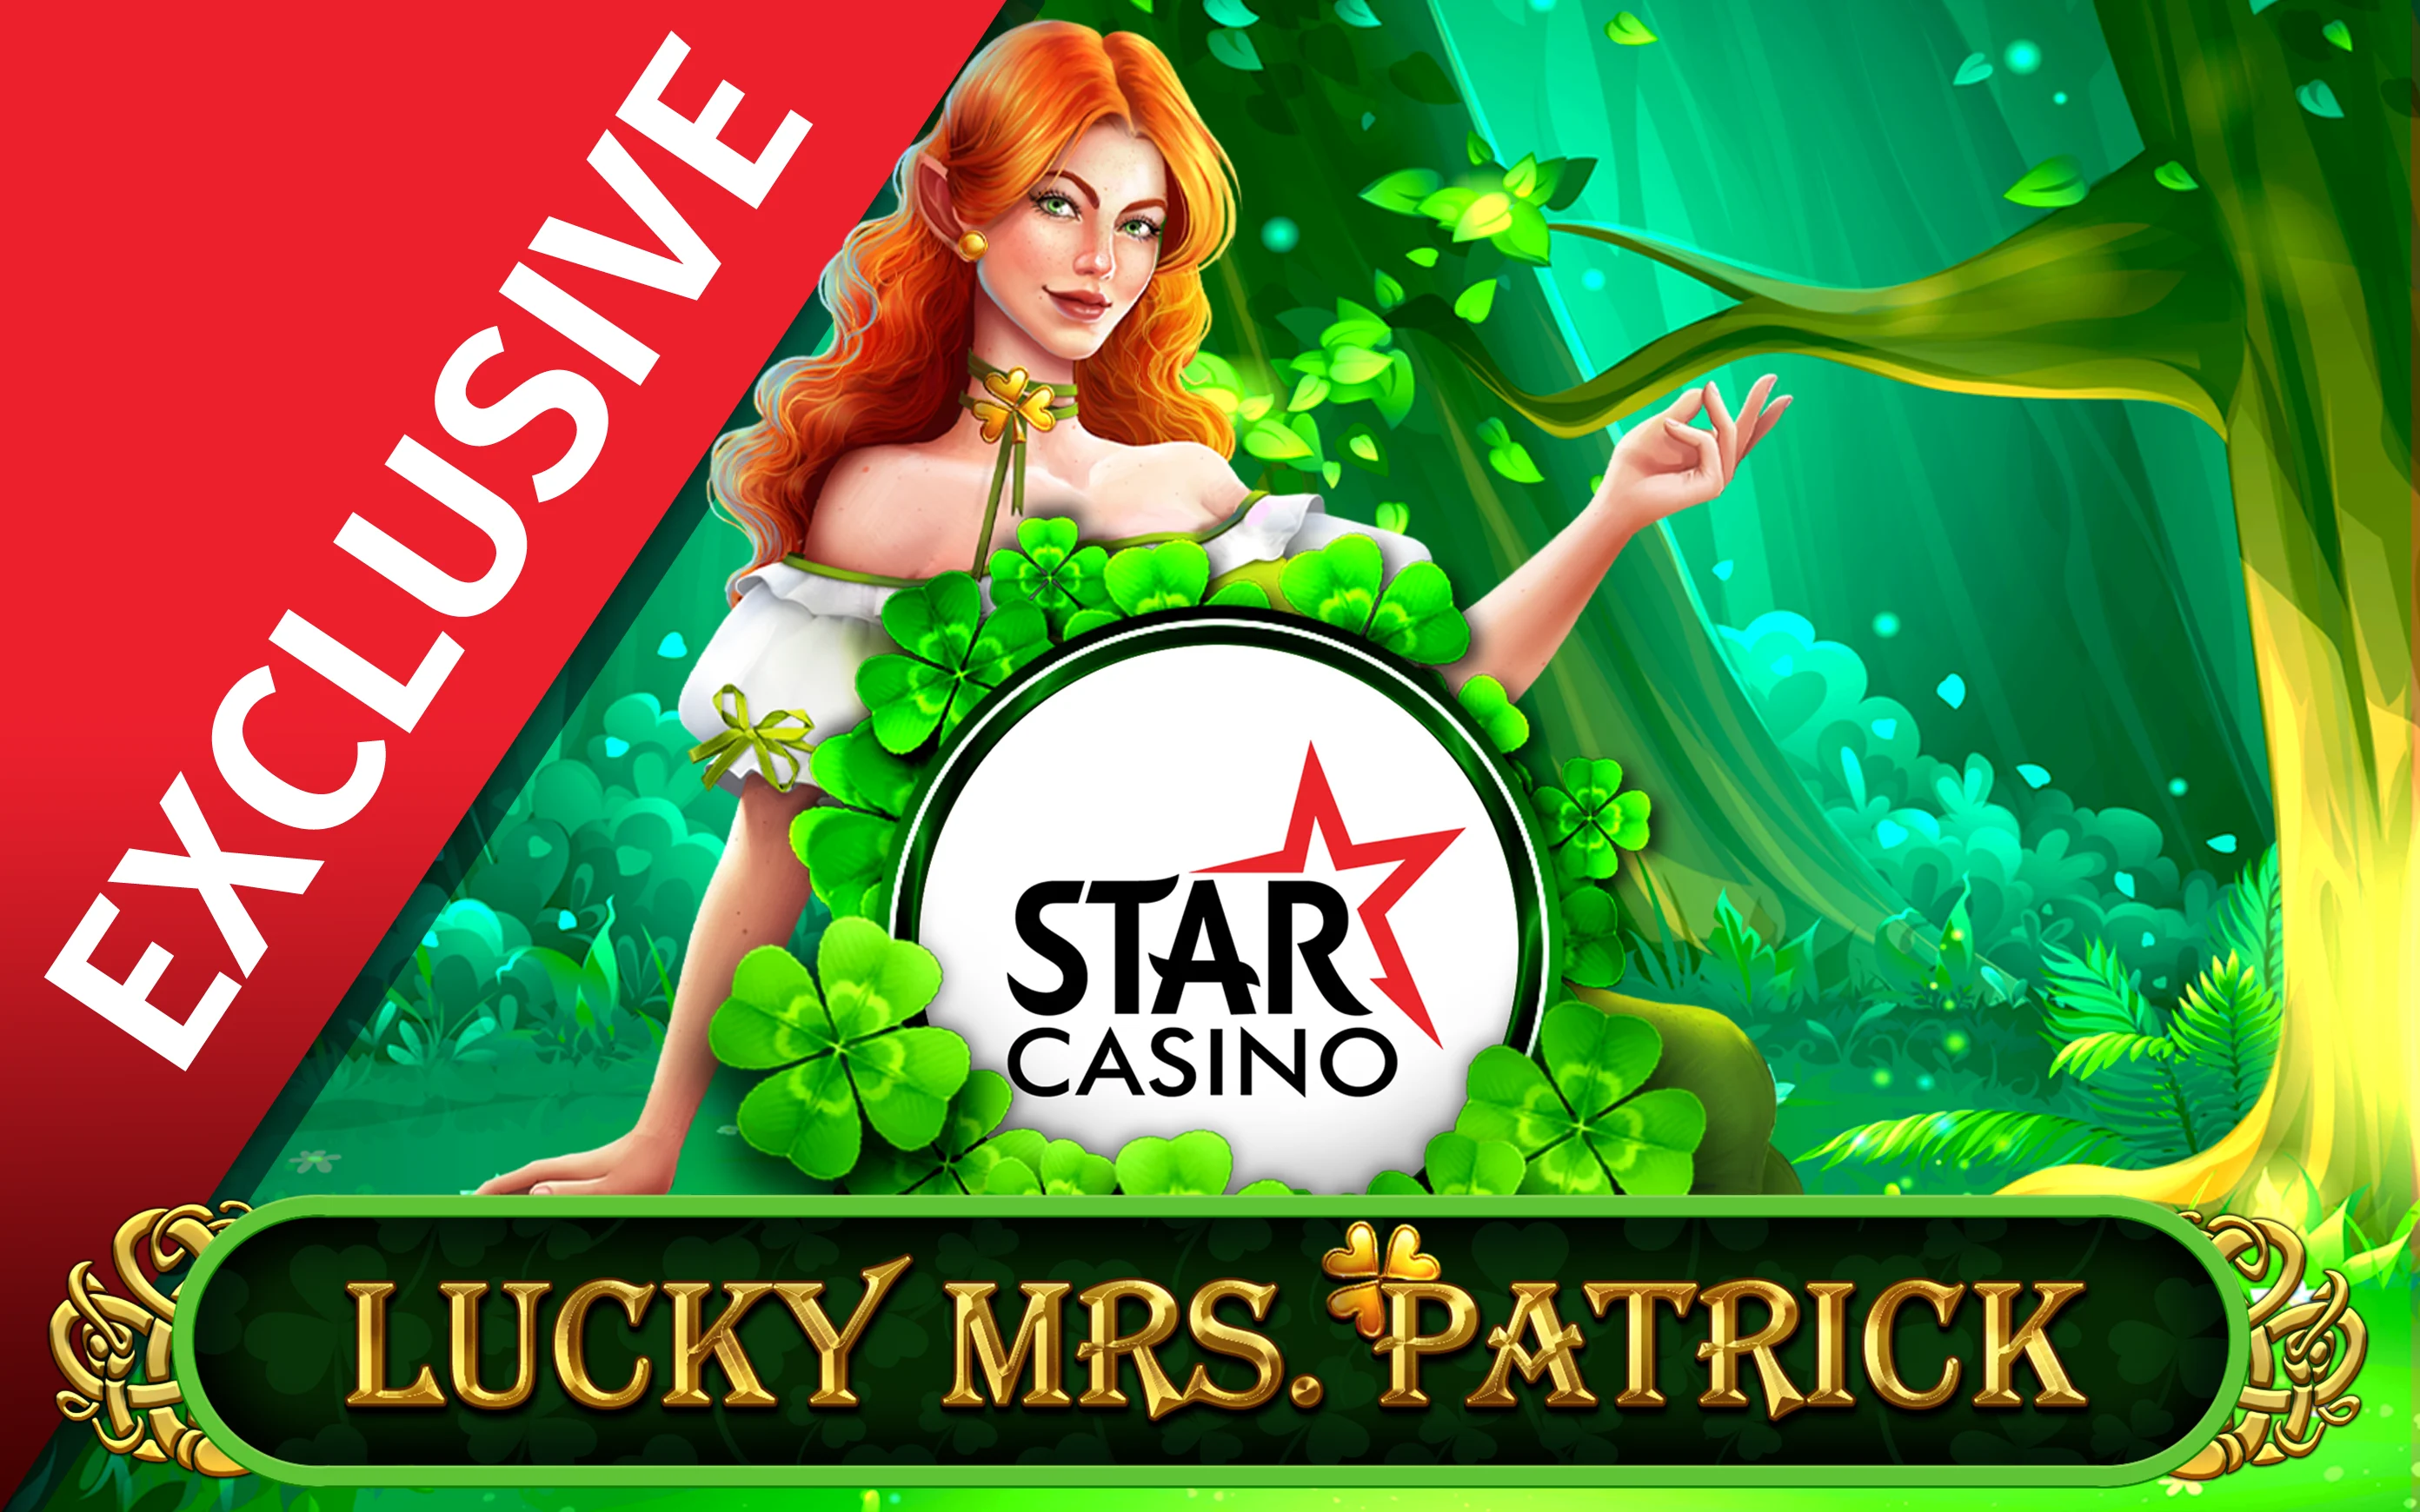 Spil Starcasino Lucky Mrs Patrick på Starcasino.be online kasino
